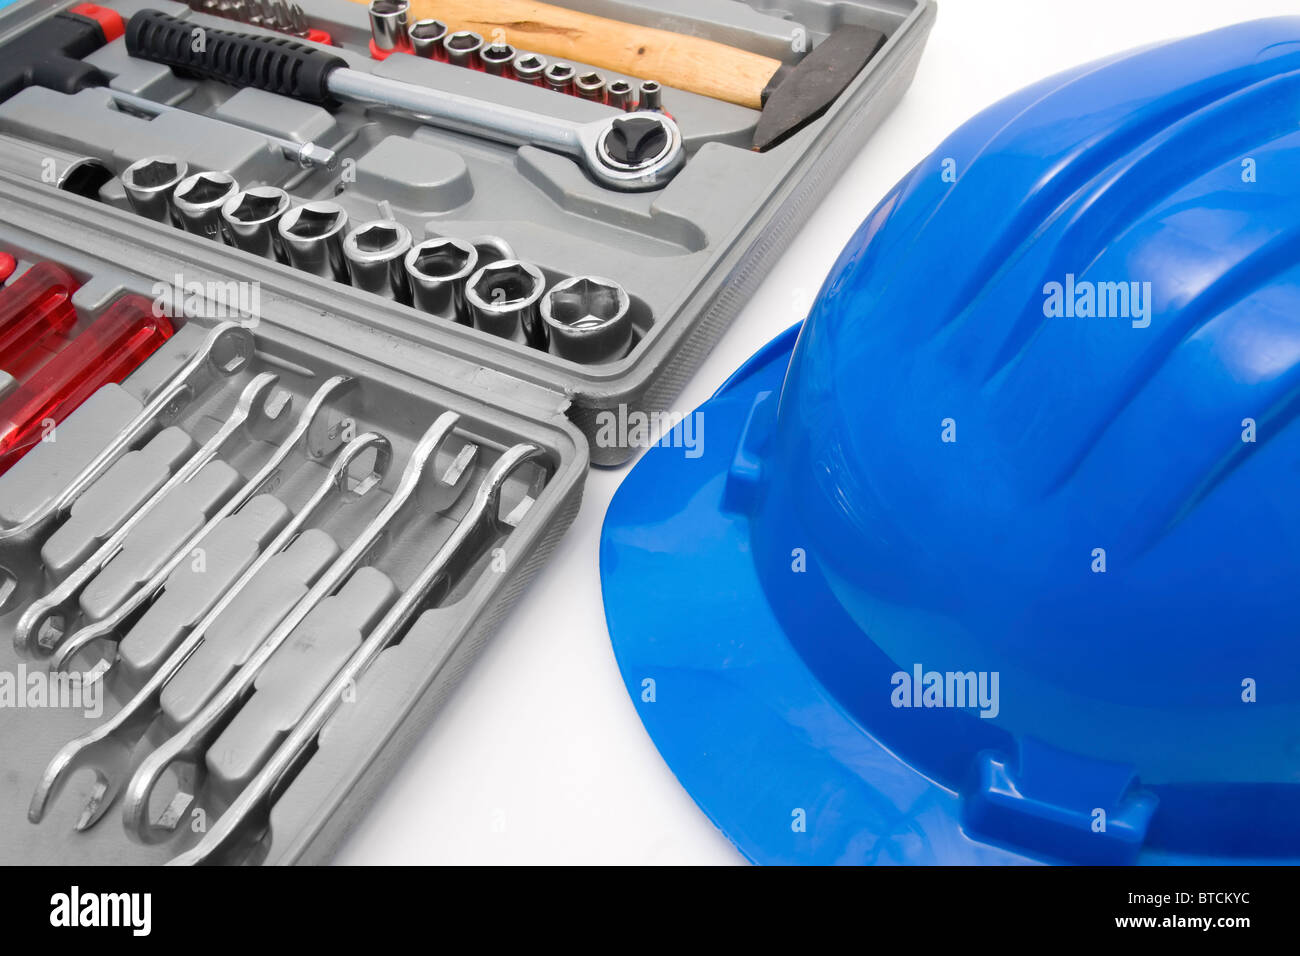 Coffre Casque bleu et la boîte à outils pour les travailleurs Banque D'Images